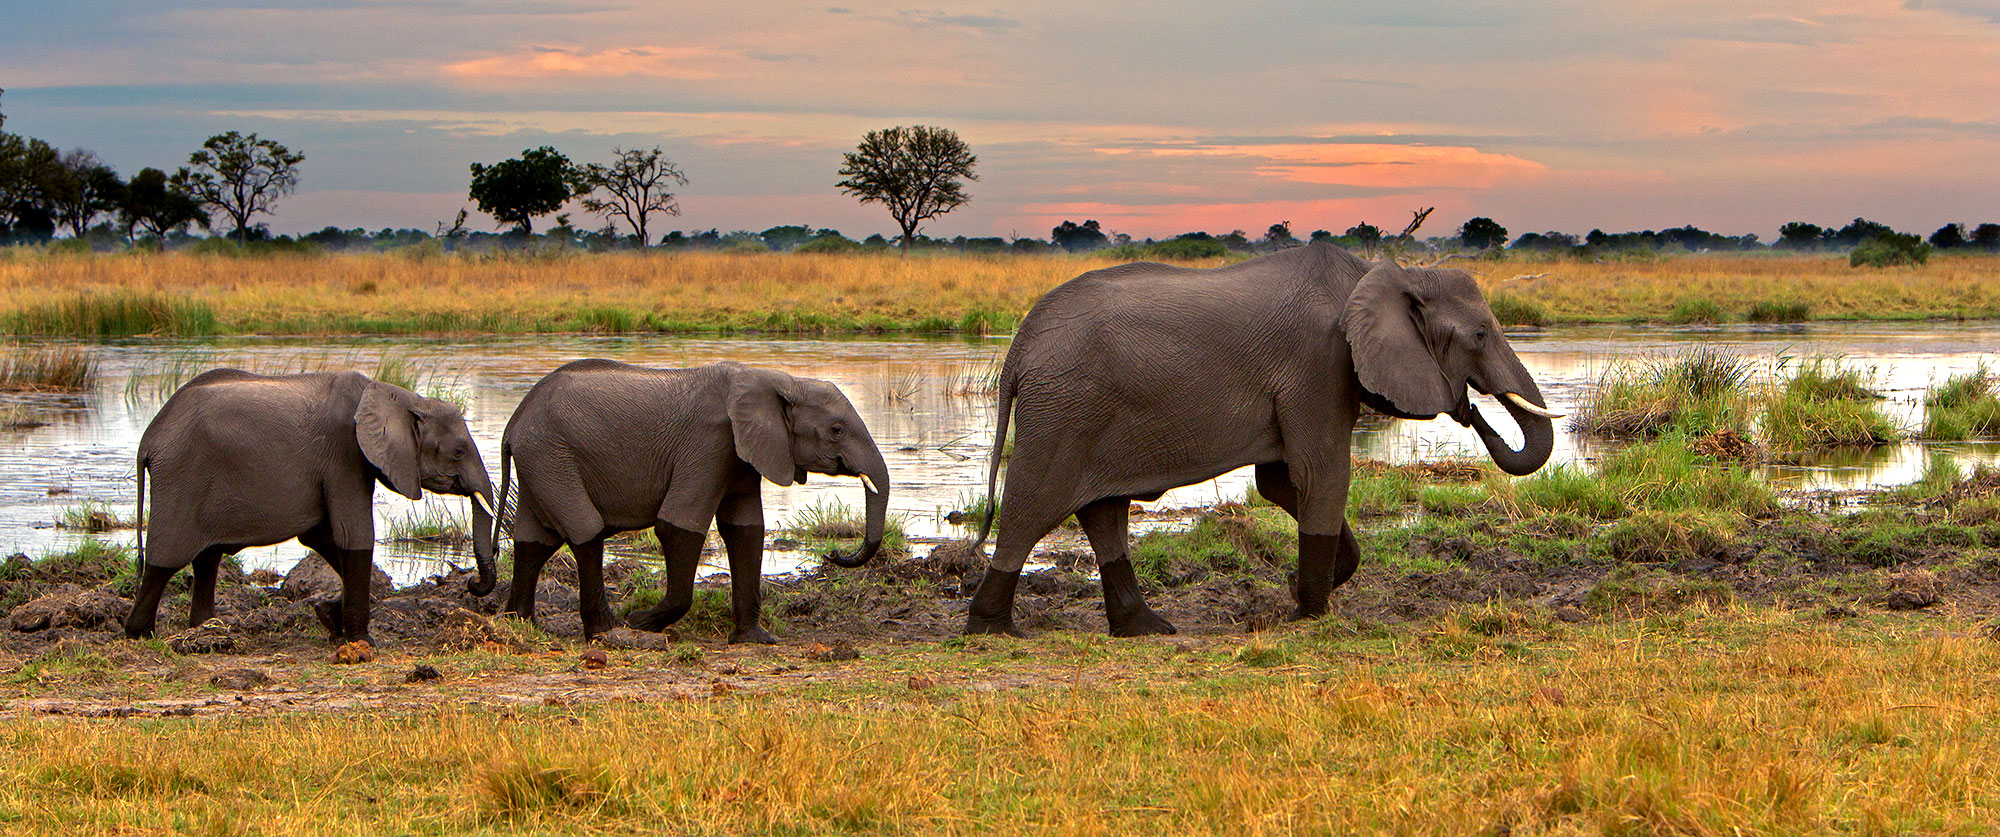 Botswana Safari Tour: Peak Season Okavango Adventure - Elephants in the Okavango Delta